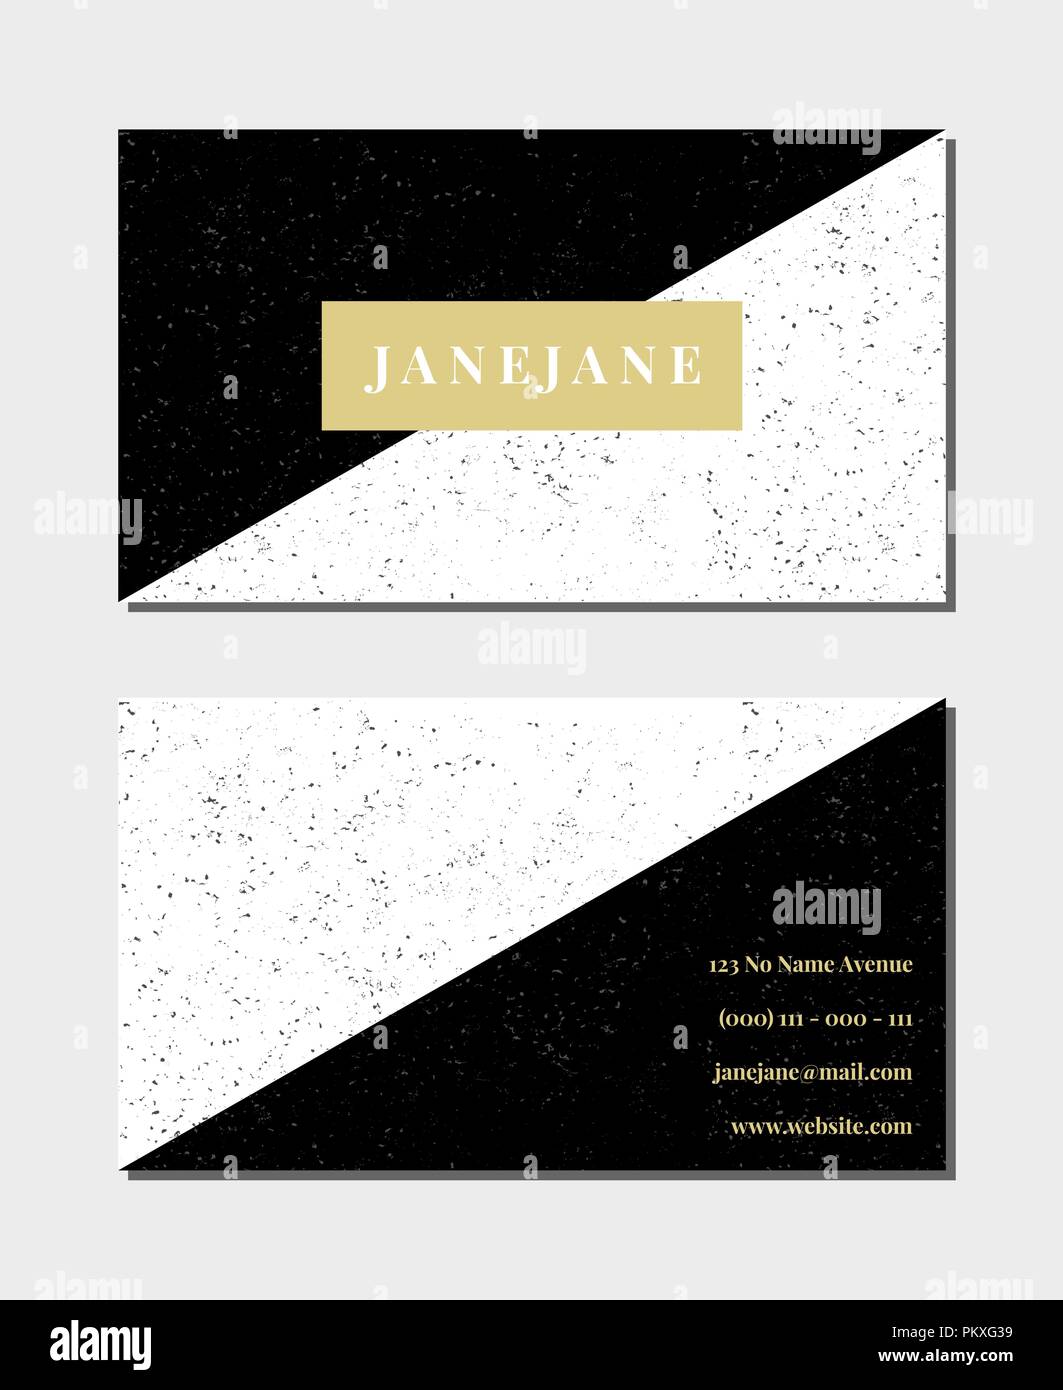 Visitenkarte vorlage in schwarz, weiß und gold, 3,5x2, vorne und hinten. Feminin und modernen, minimalistischen Design, geometrischen Stil, gefleckt Textur. Stock Vektor